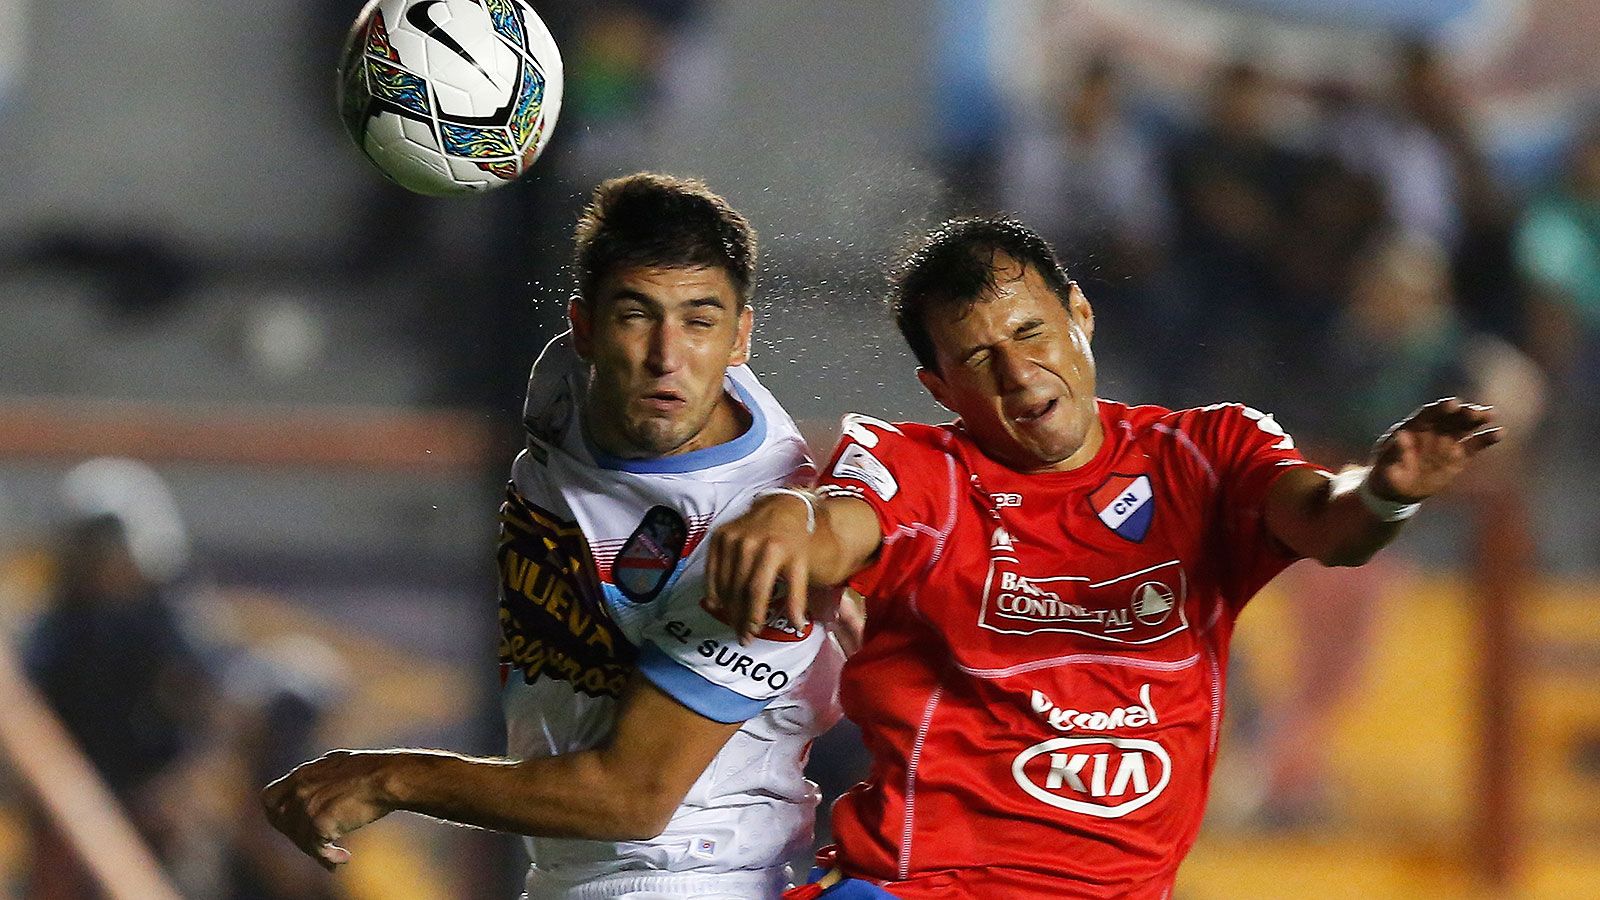 Copa Libertadores 2014